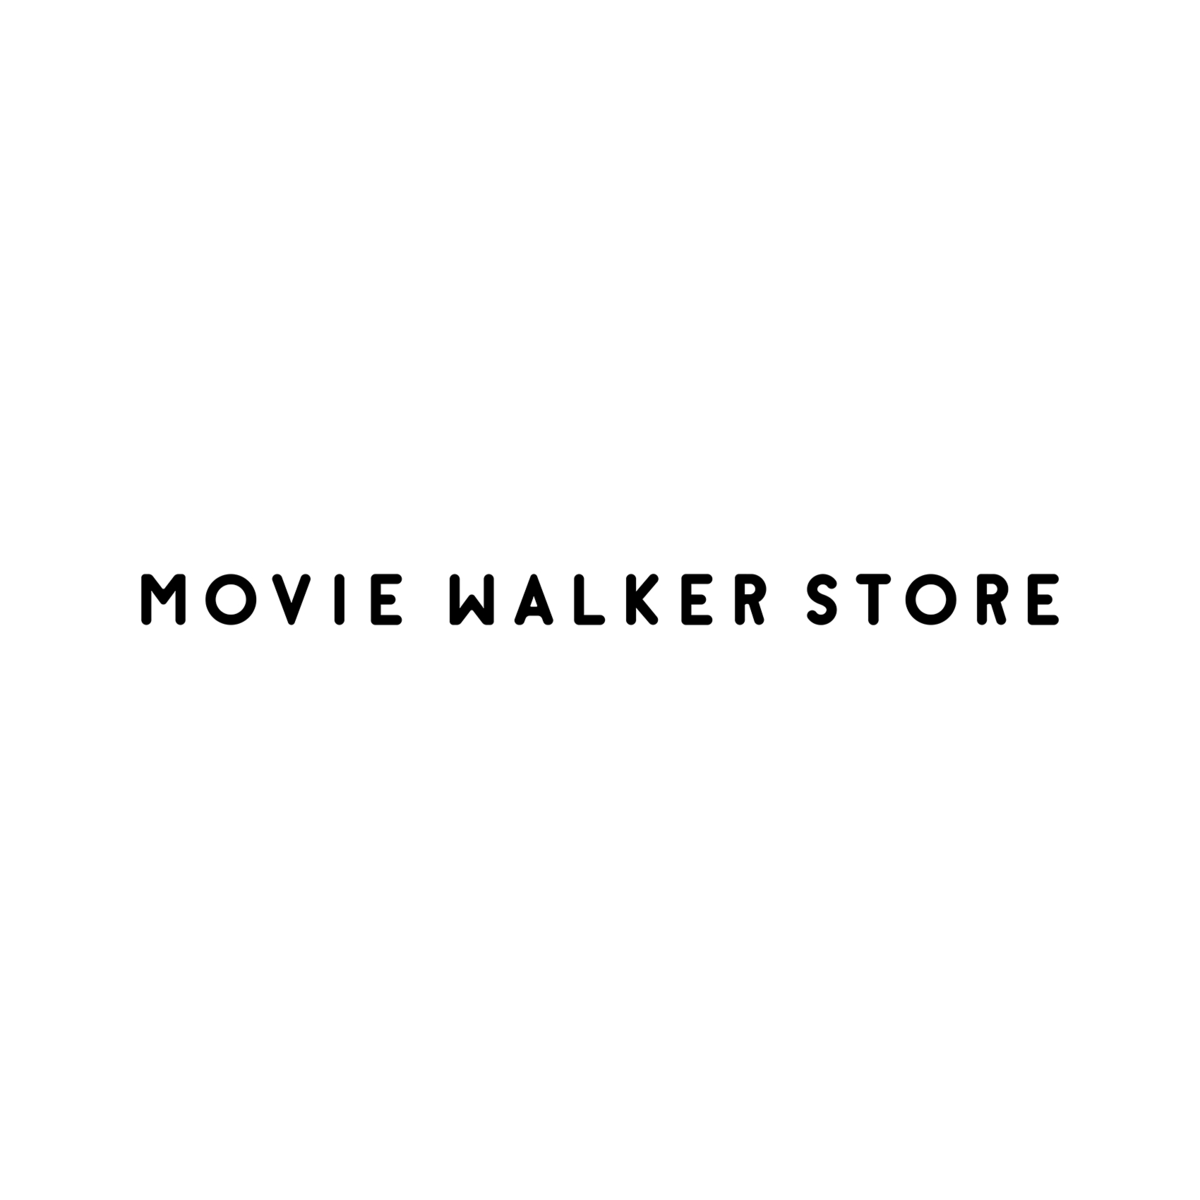 MOVIE WALKER STORE｜ムービーウォーカーストア｜映画、パンフレット、ポスター、Tシャツなどのグッズ販売